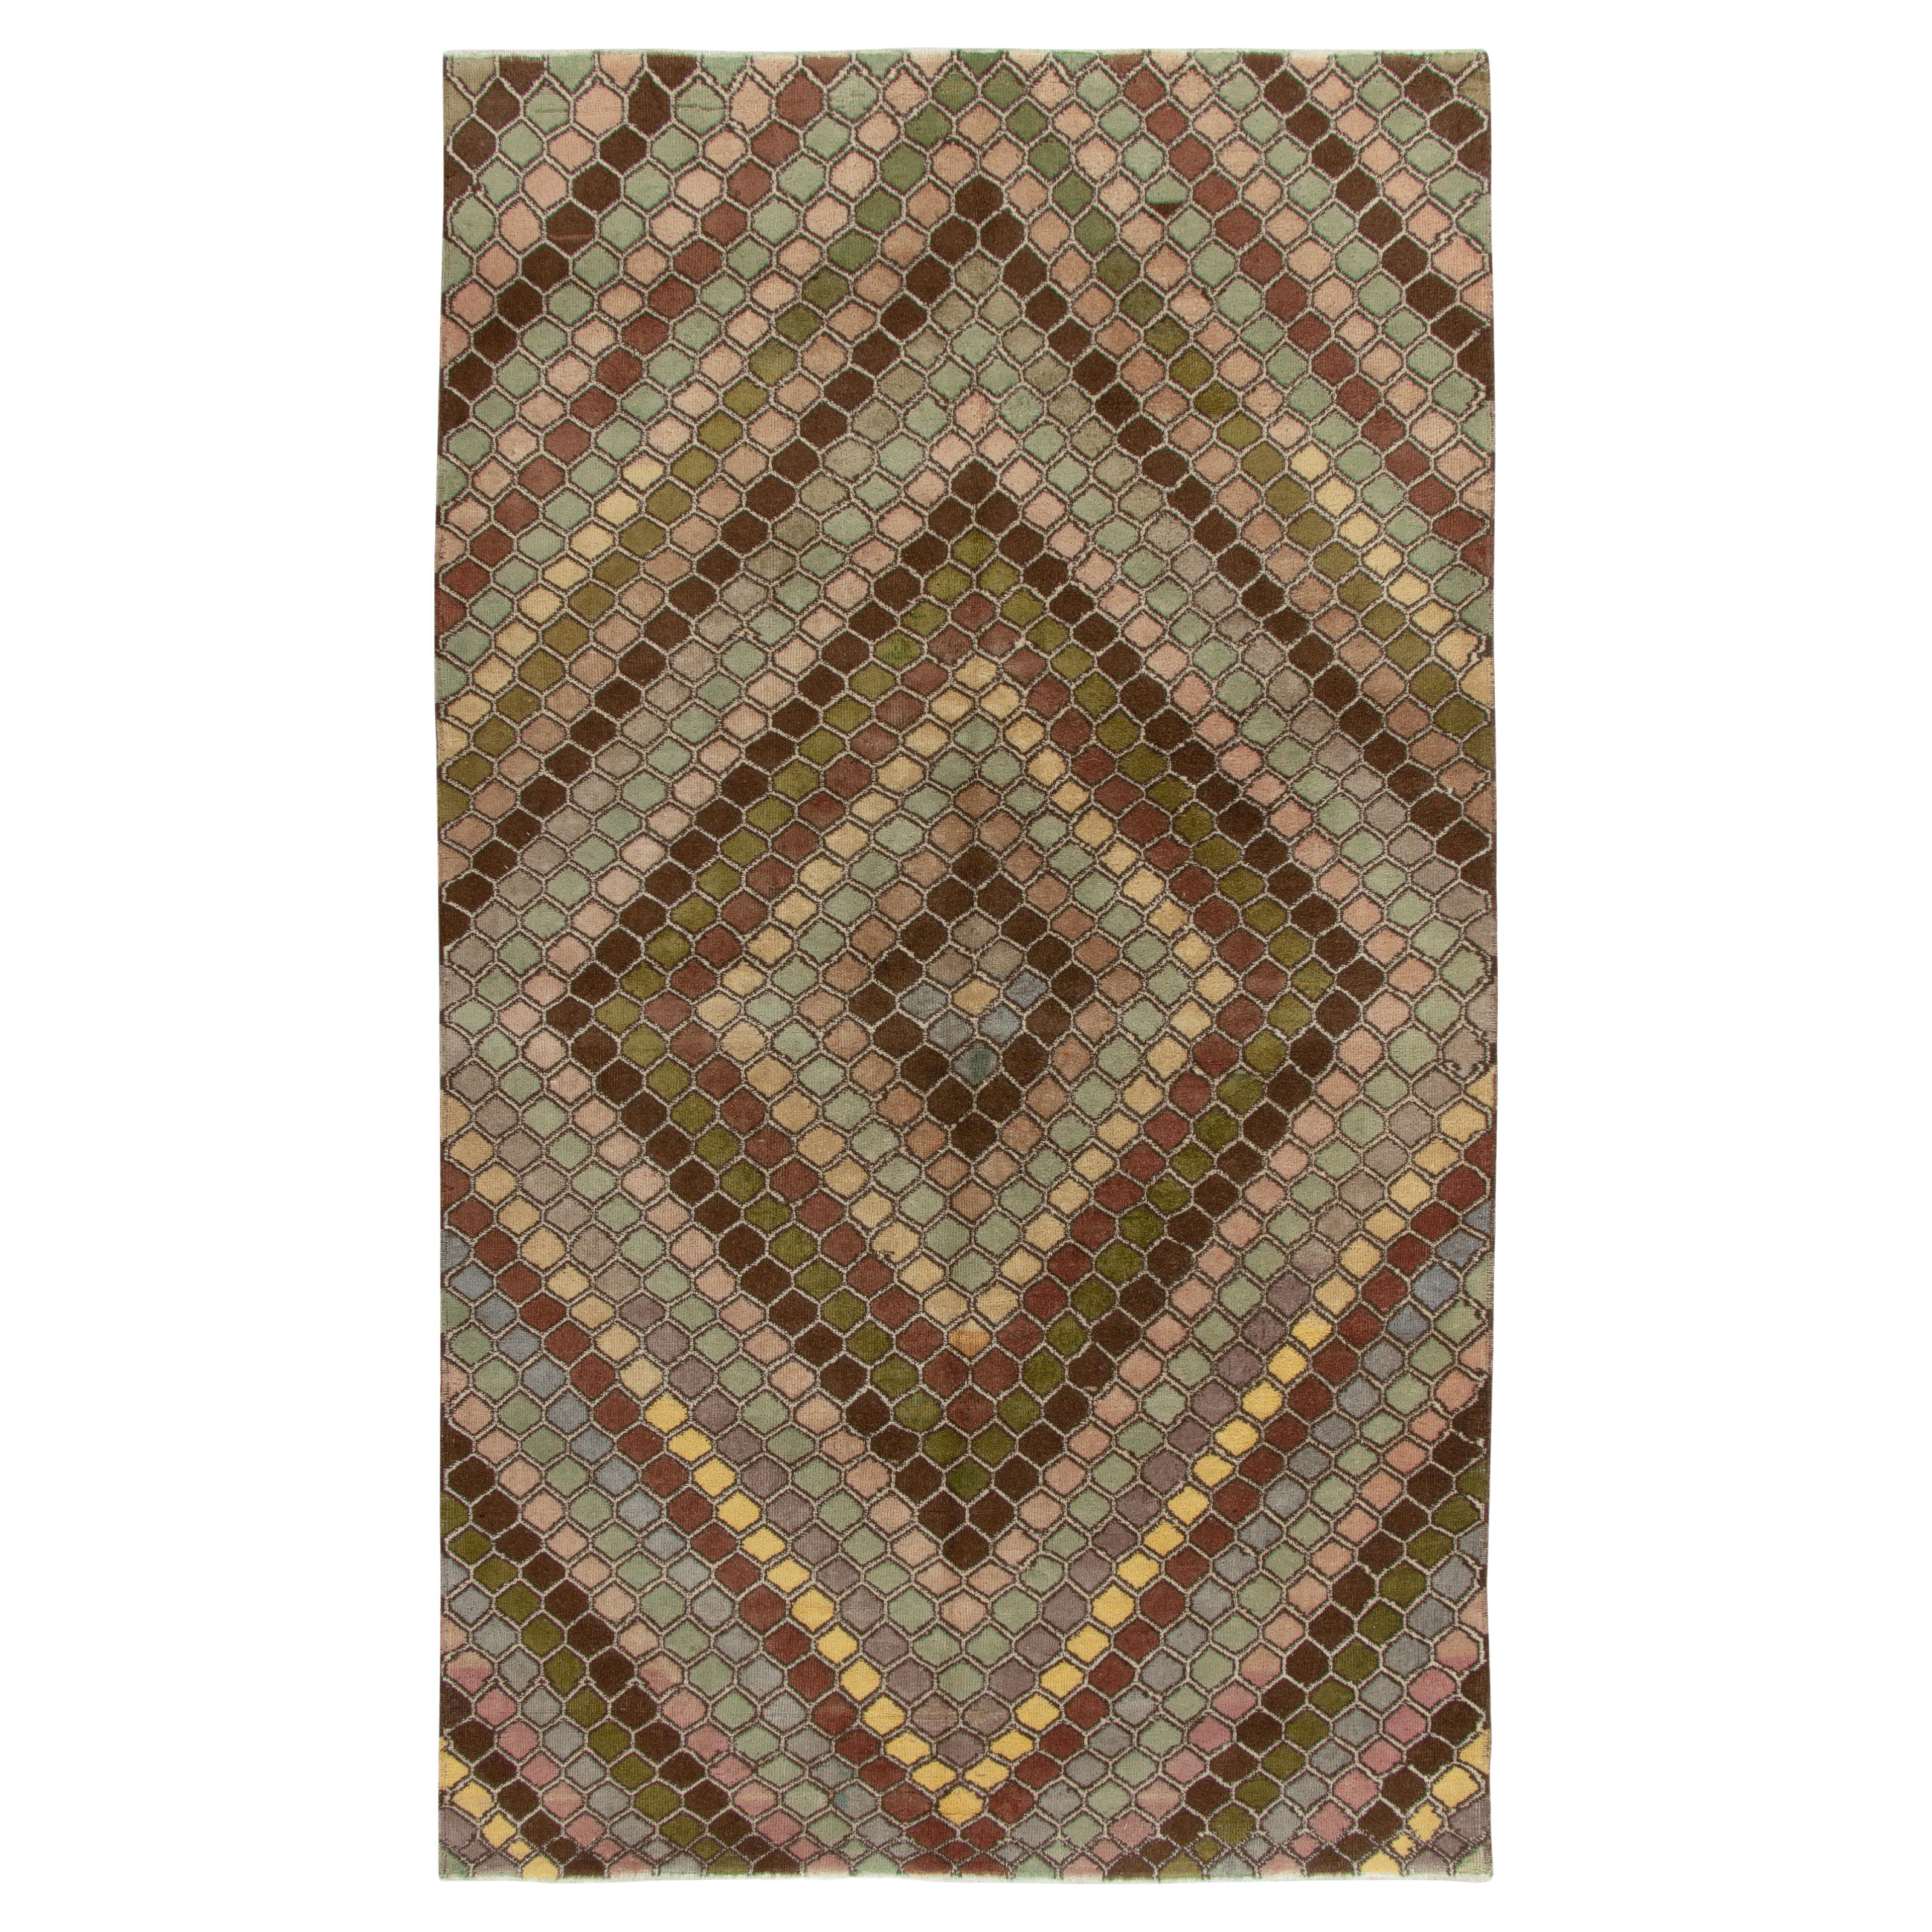 Vintage Art Deco Rug in Beige-Brown, Pink & Blue Diamond Pattern by Rug & Kilim For Sale